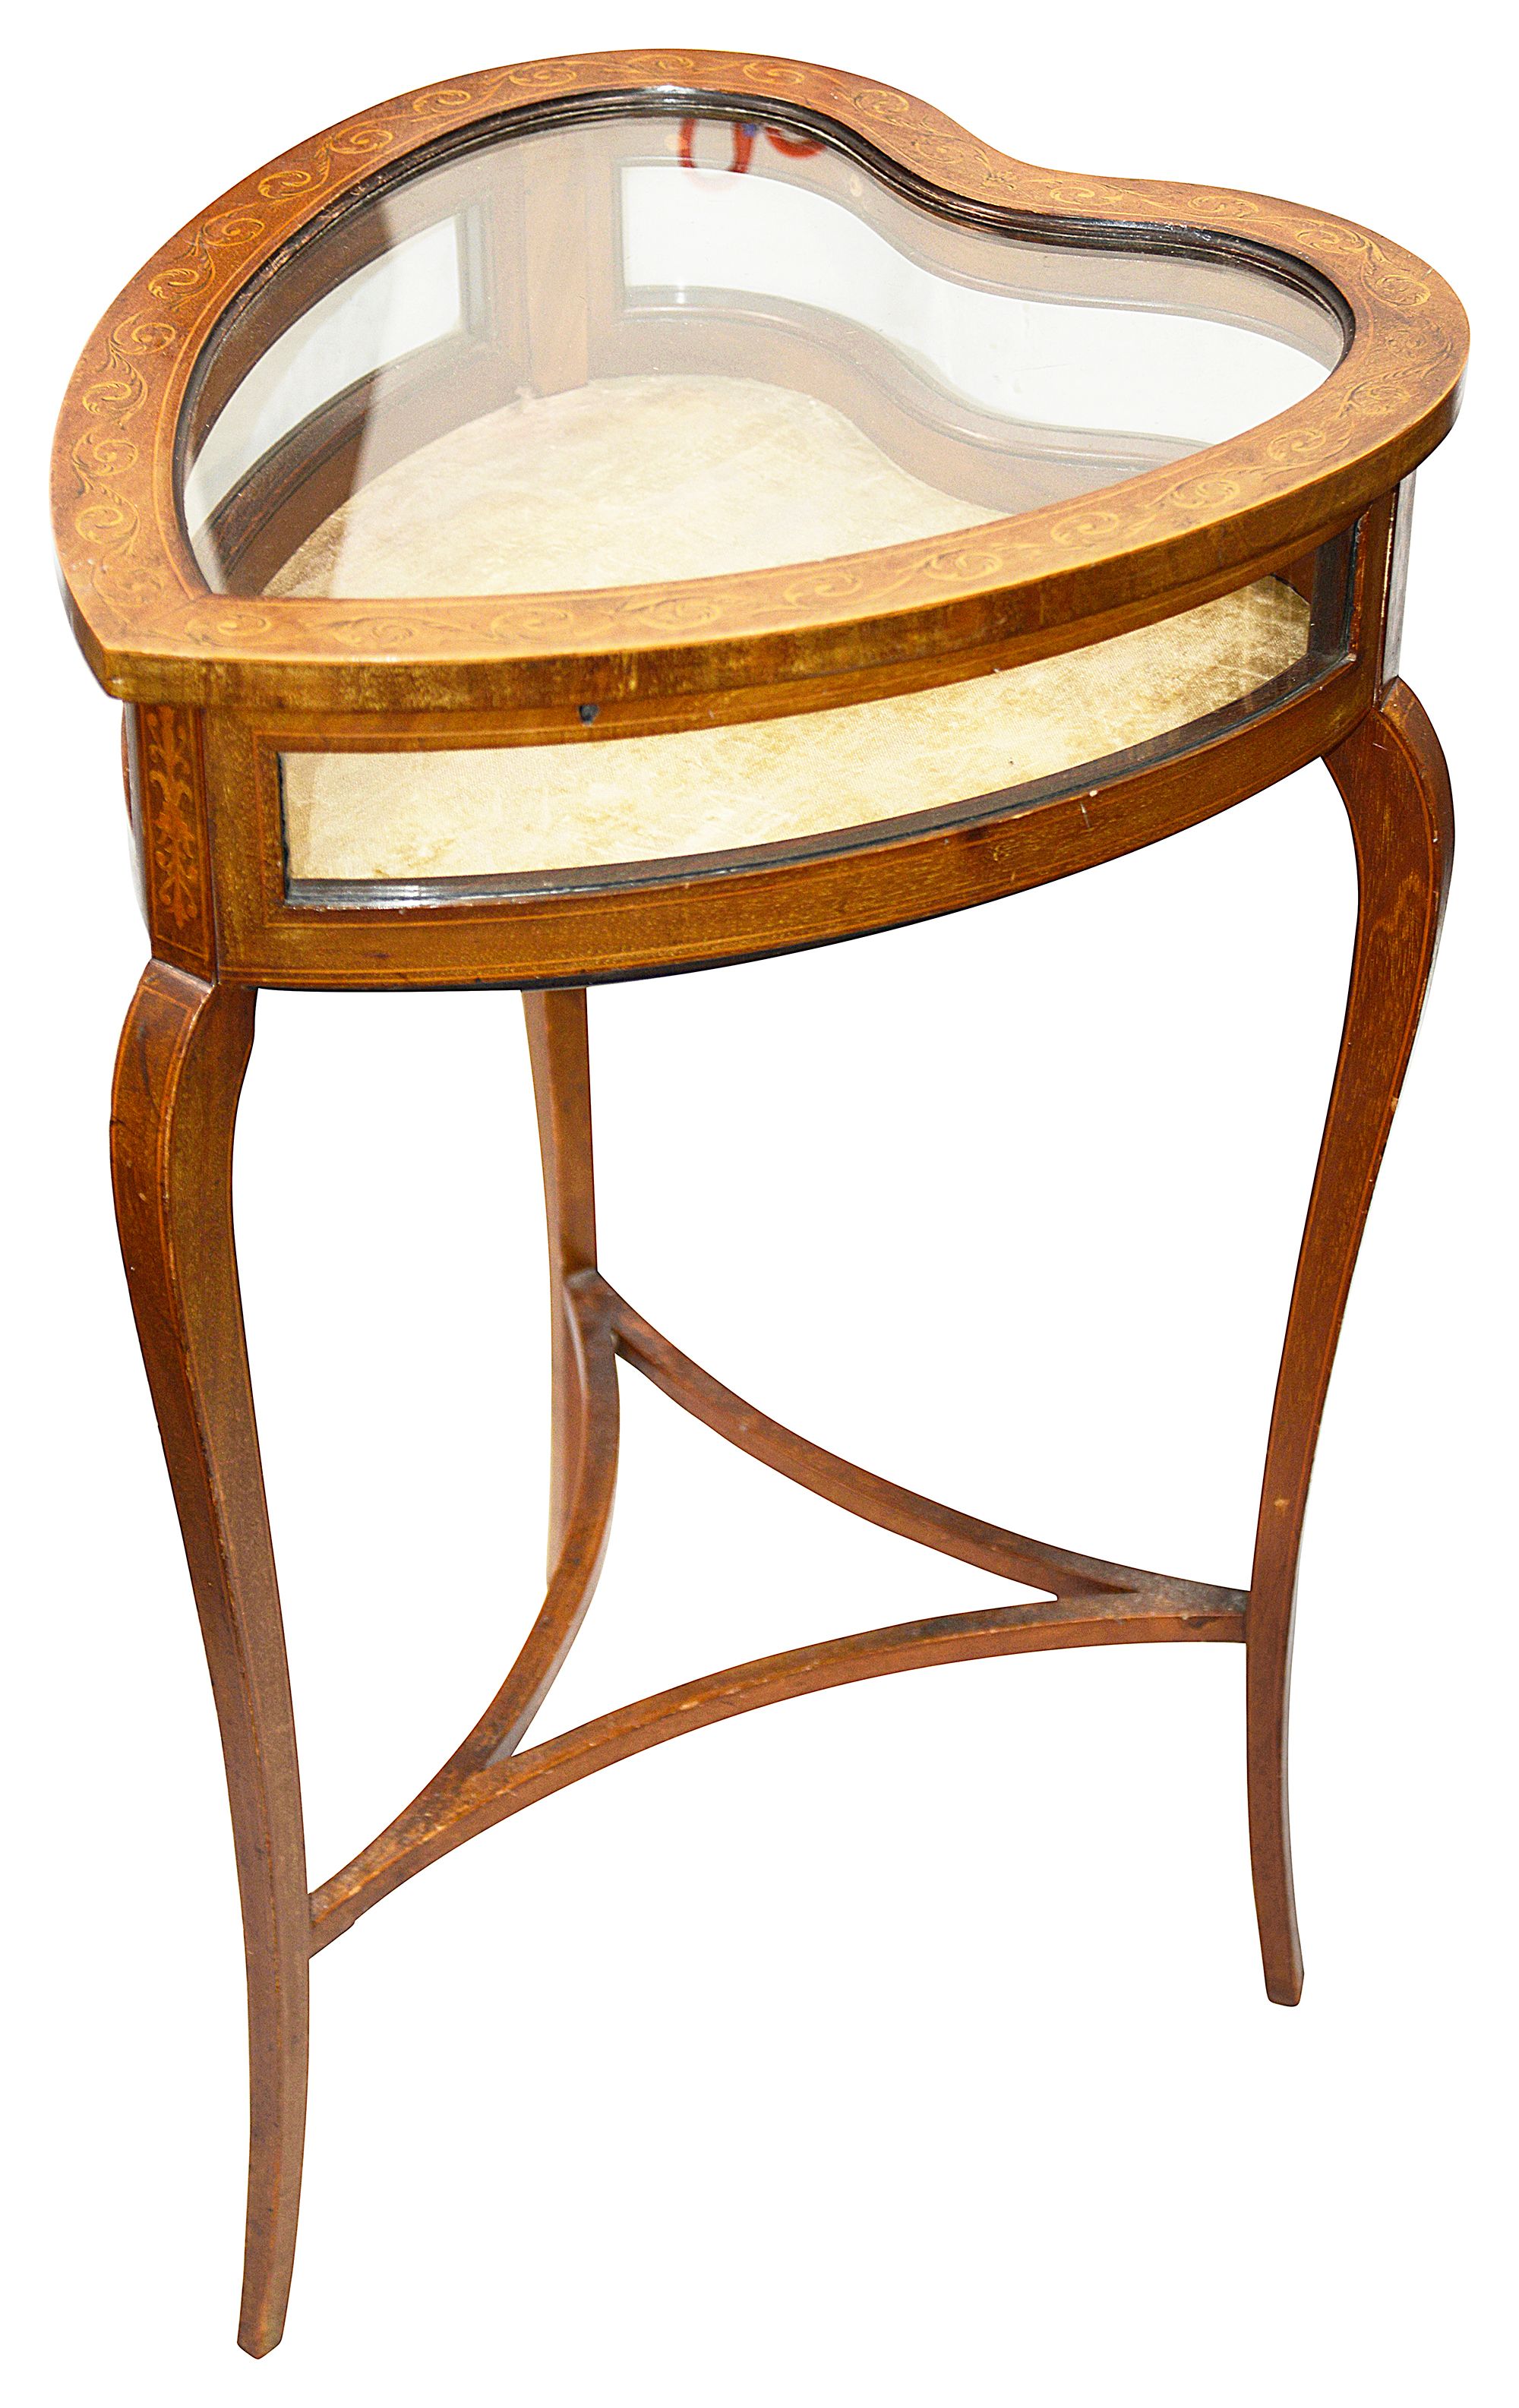 An Edwardian mahogany heart shaped bijouterie table